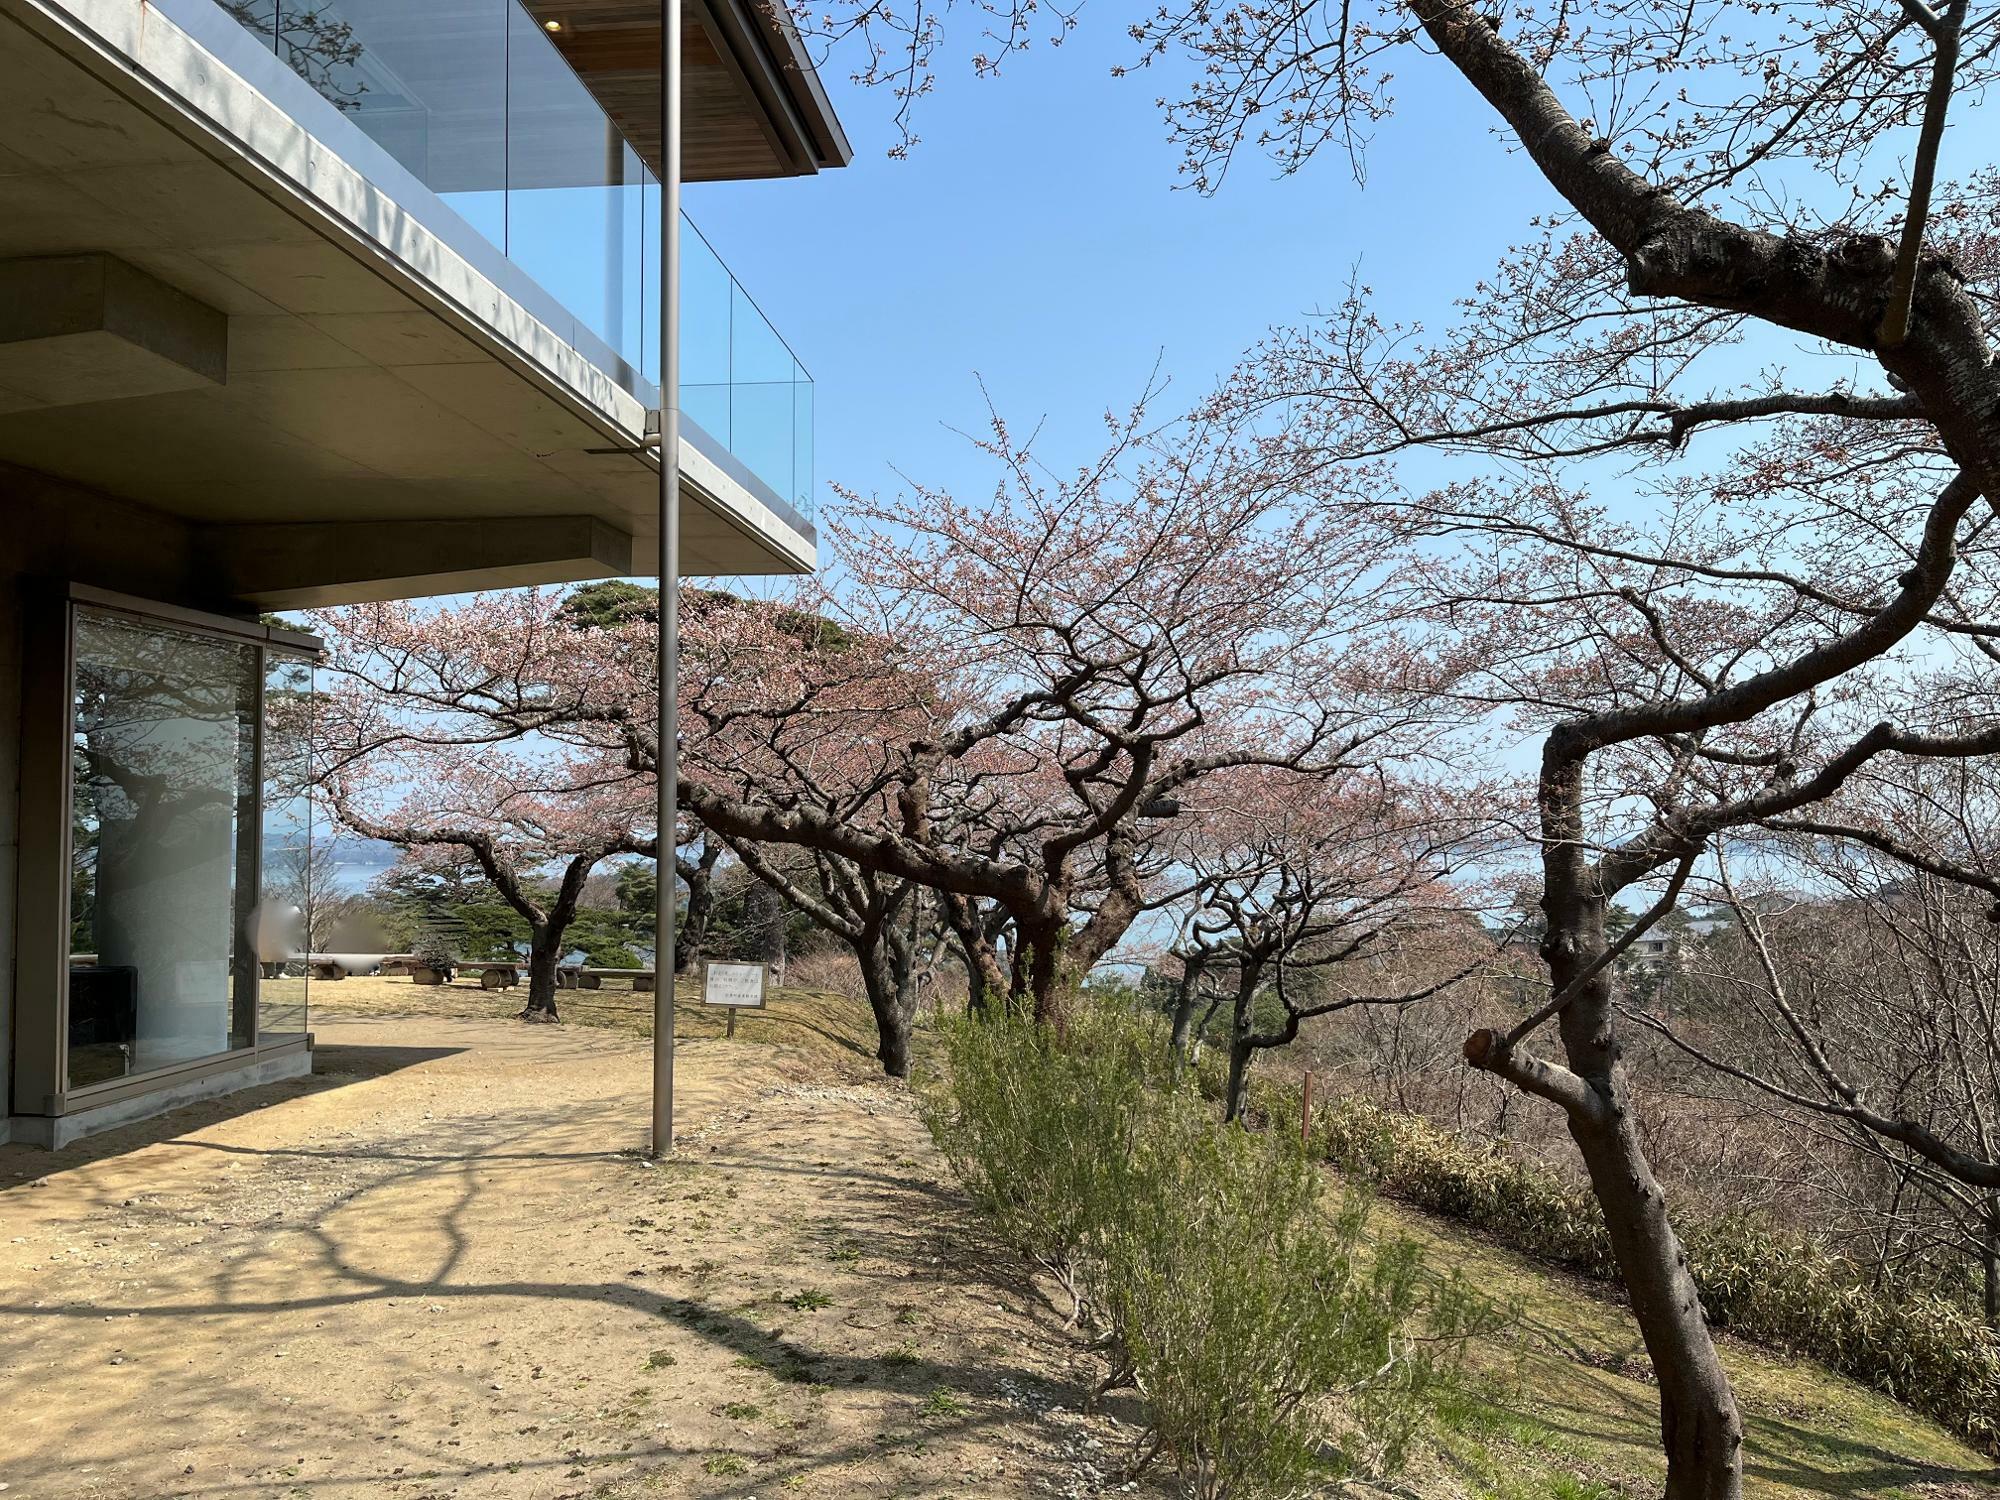 ▲ 写真向かって左の建物がカフェだ。カフェを取り囲むように桜の木々が生育中。